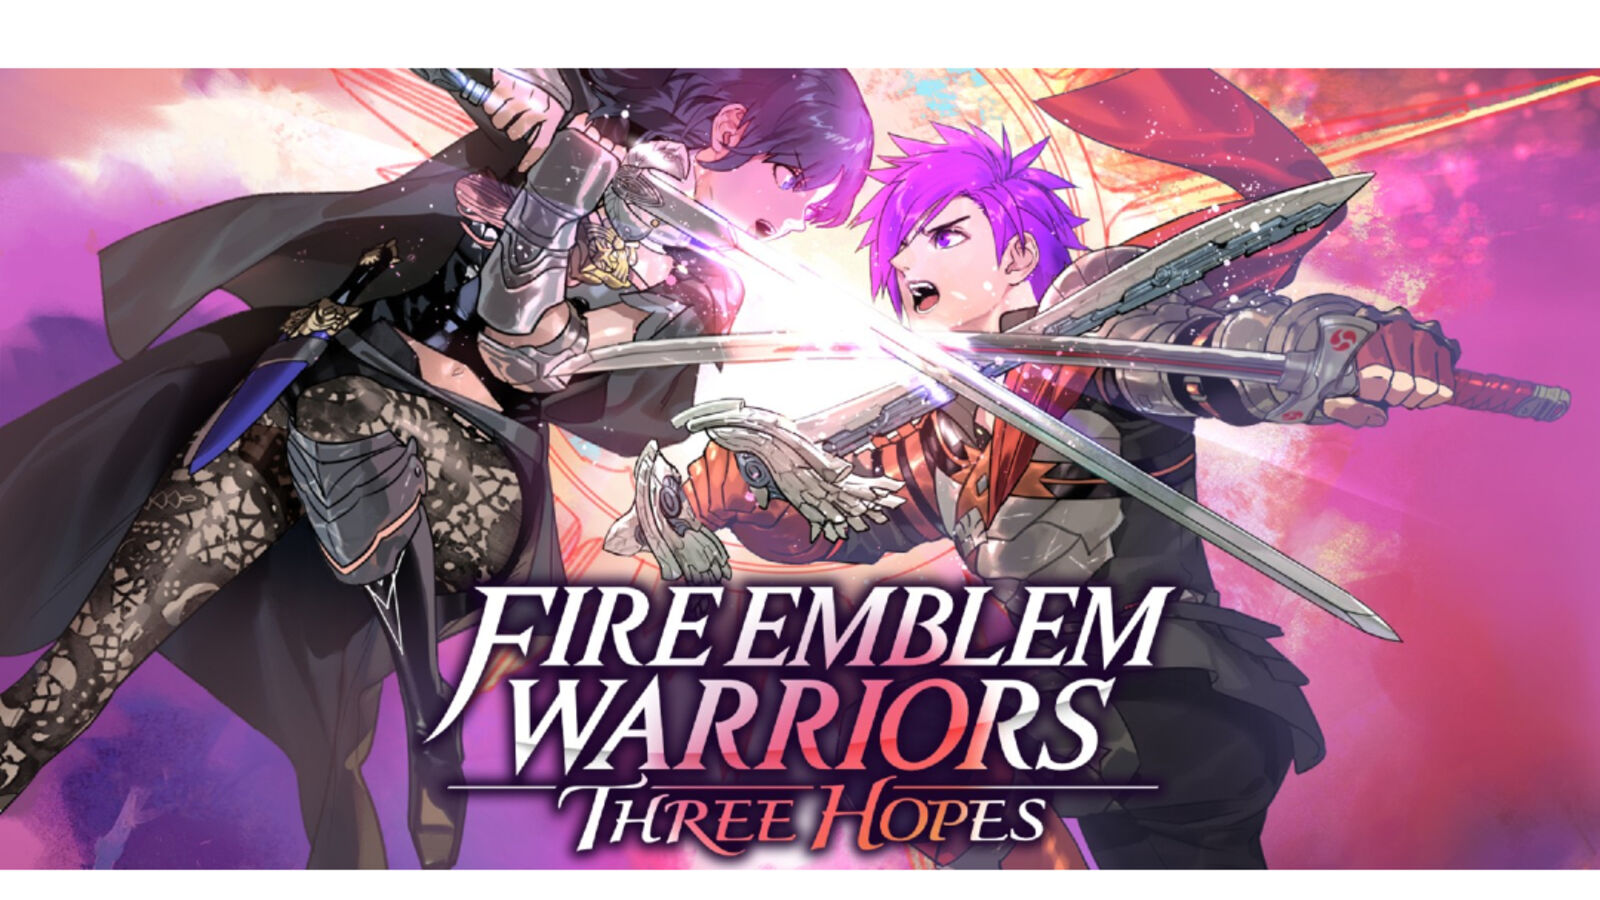 Fire Emblem Warriors Three Hopes pedidos anticipados, fecha de lanzamiento, precio y ediciones